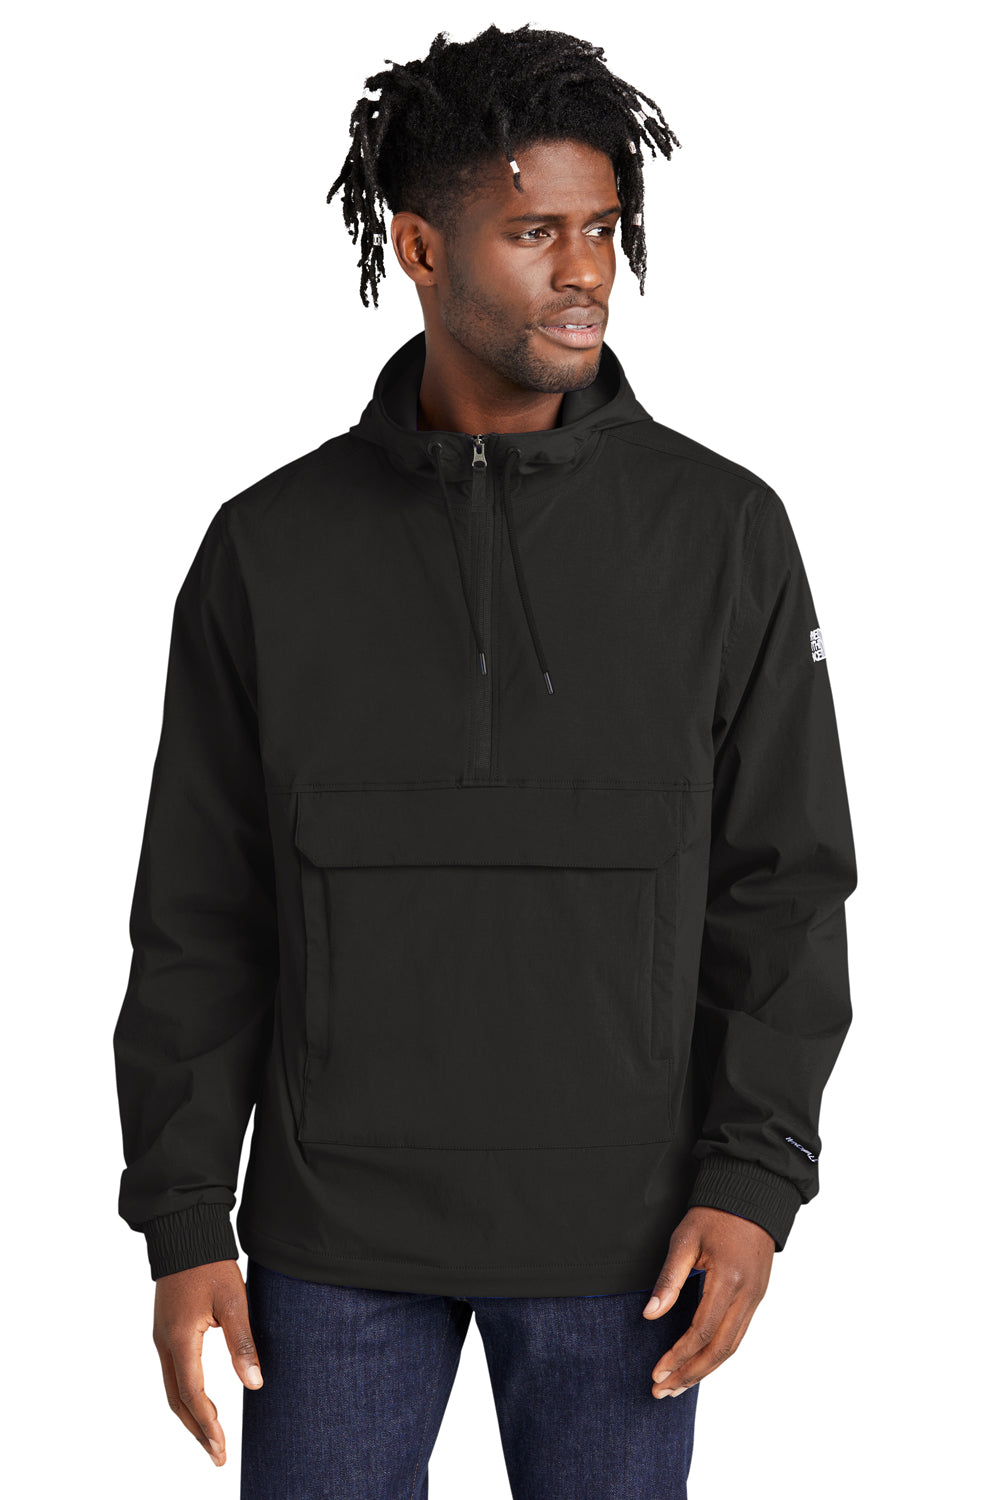 Wacht even Sneeuwstorm vrijwilliger The North Face NF0A5IRW Mens Black Wind & Water Resistant Packable 1/4 Zip  Anorak Hooded Jacket — BigTopShirtShop.com